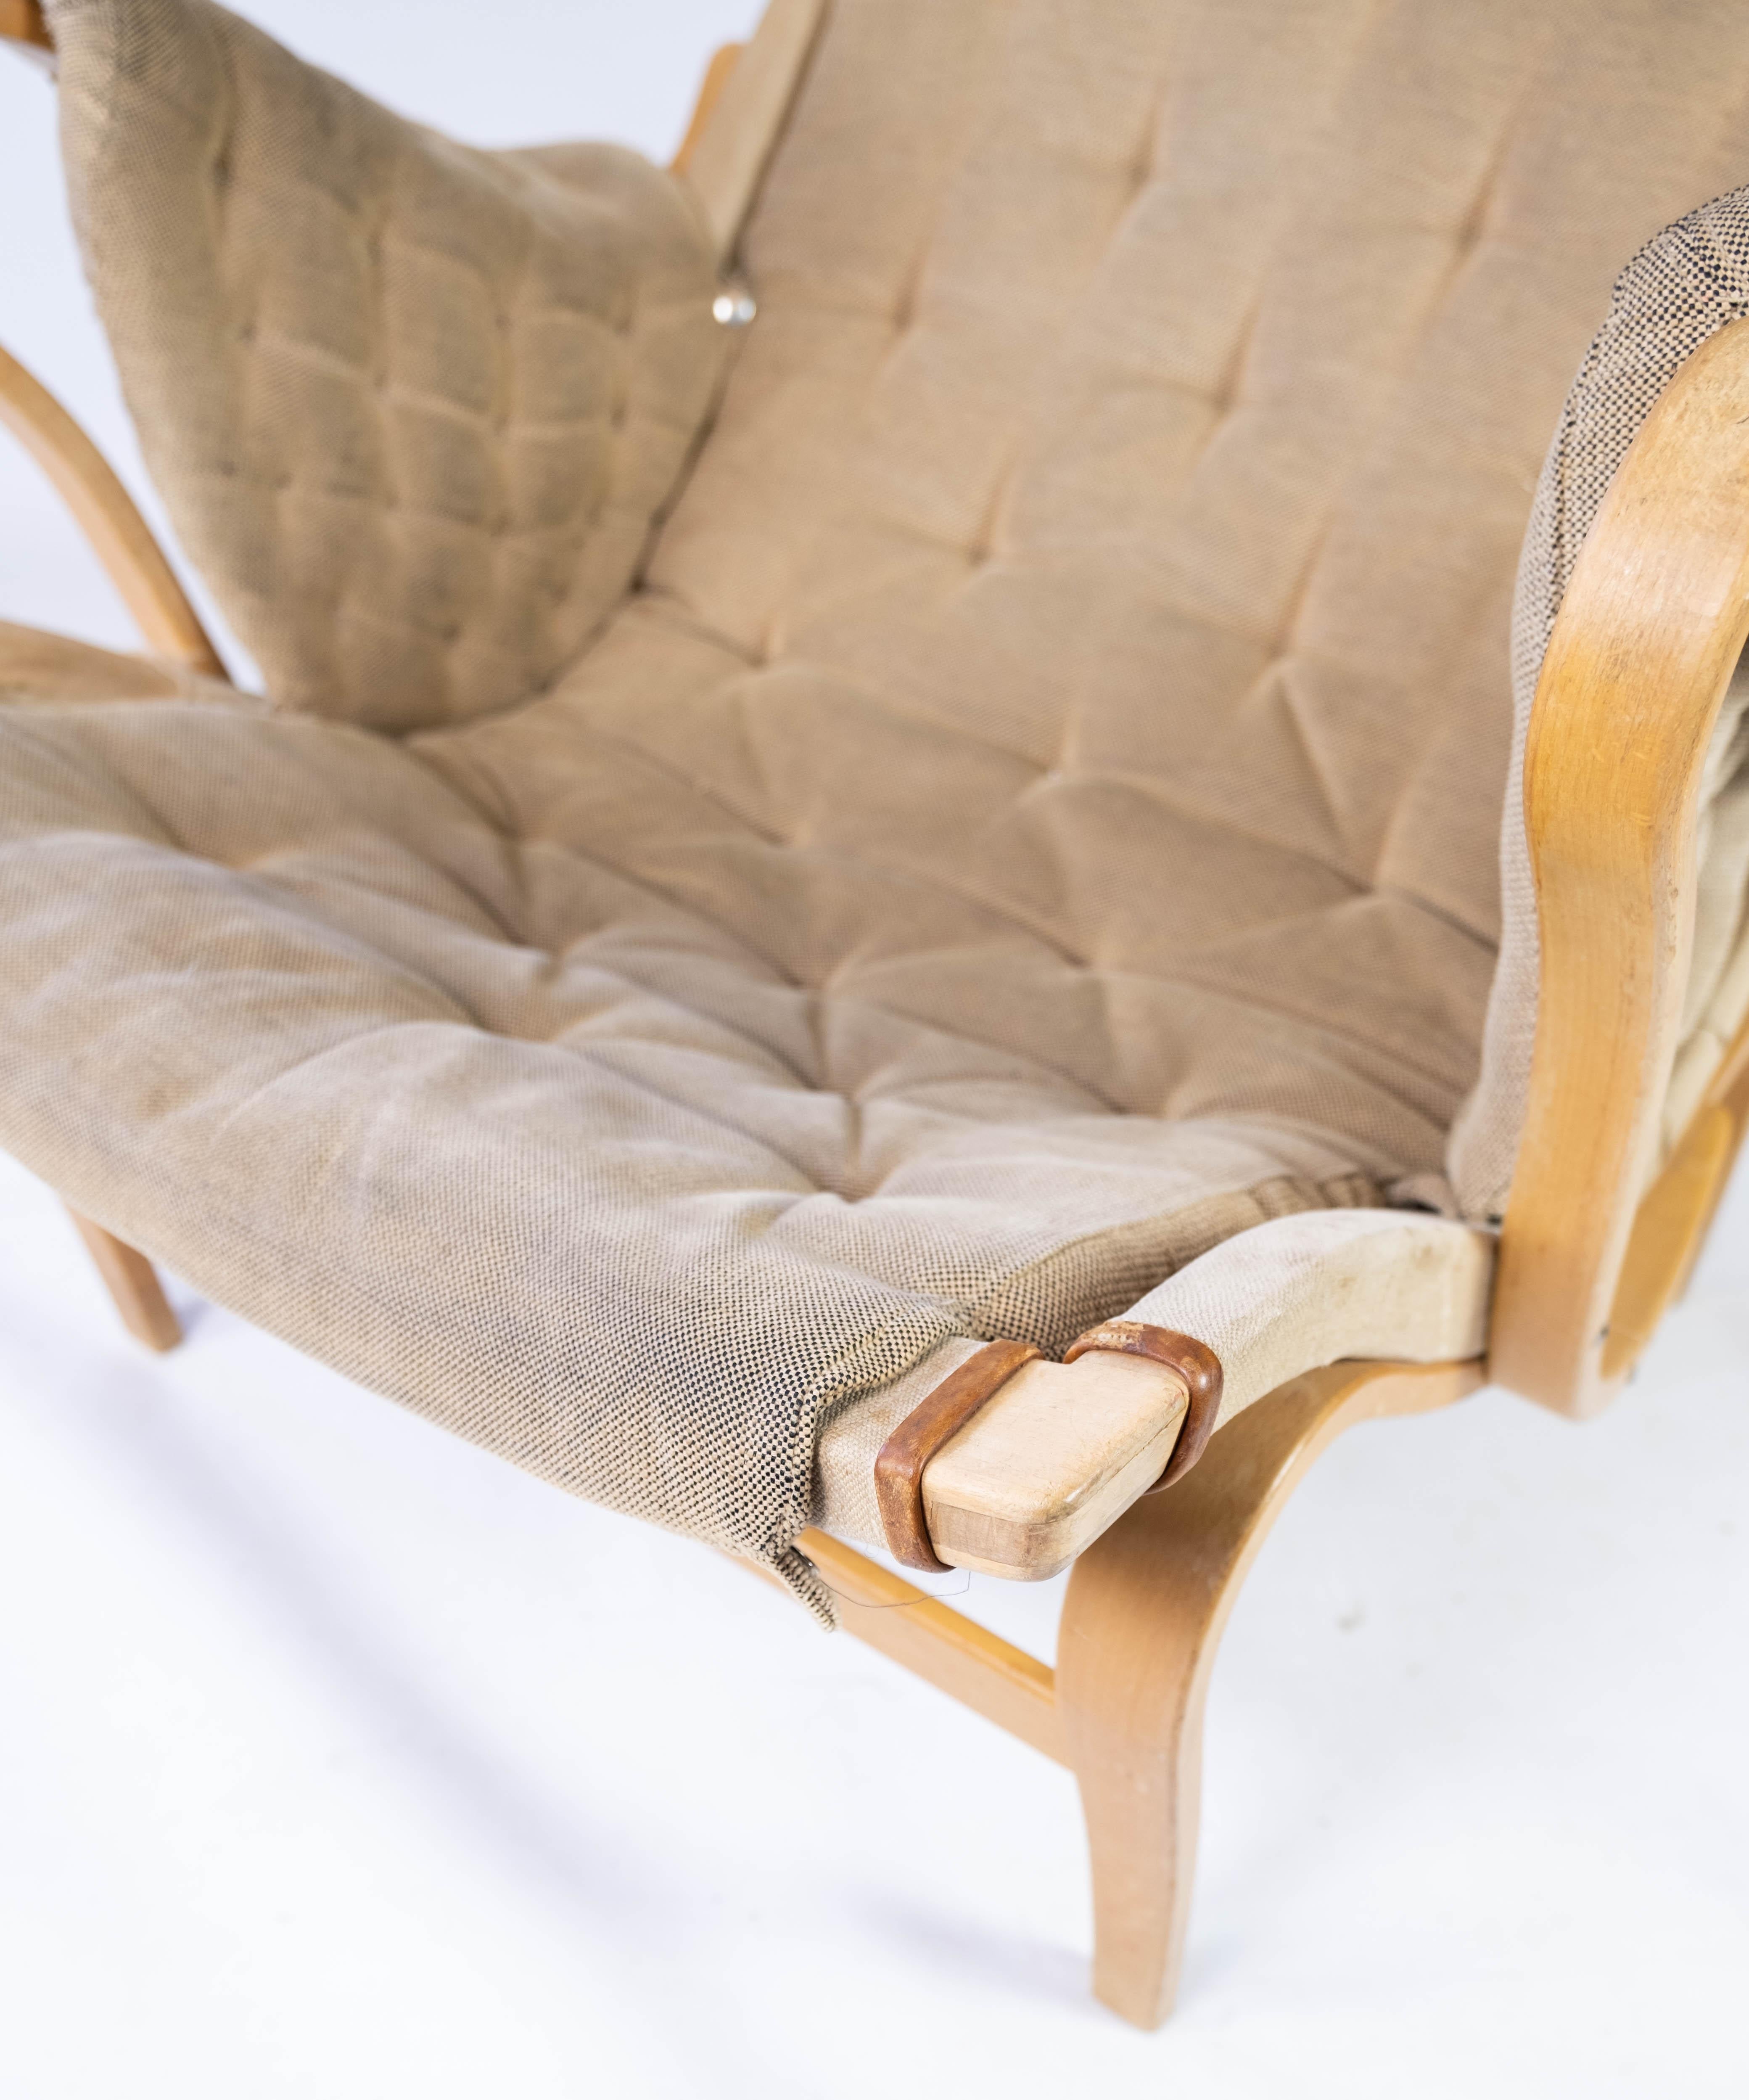 Le fauteuil Pernilla, conçu par Bruno Mathsson et fabriqué par Dux dans les années 1960, représente une pièce du mobilier scandinave. Cette chaise, avec son cadre en bois courbé caractéristique et son assise de forme organique, dégage une élégance